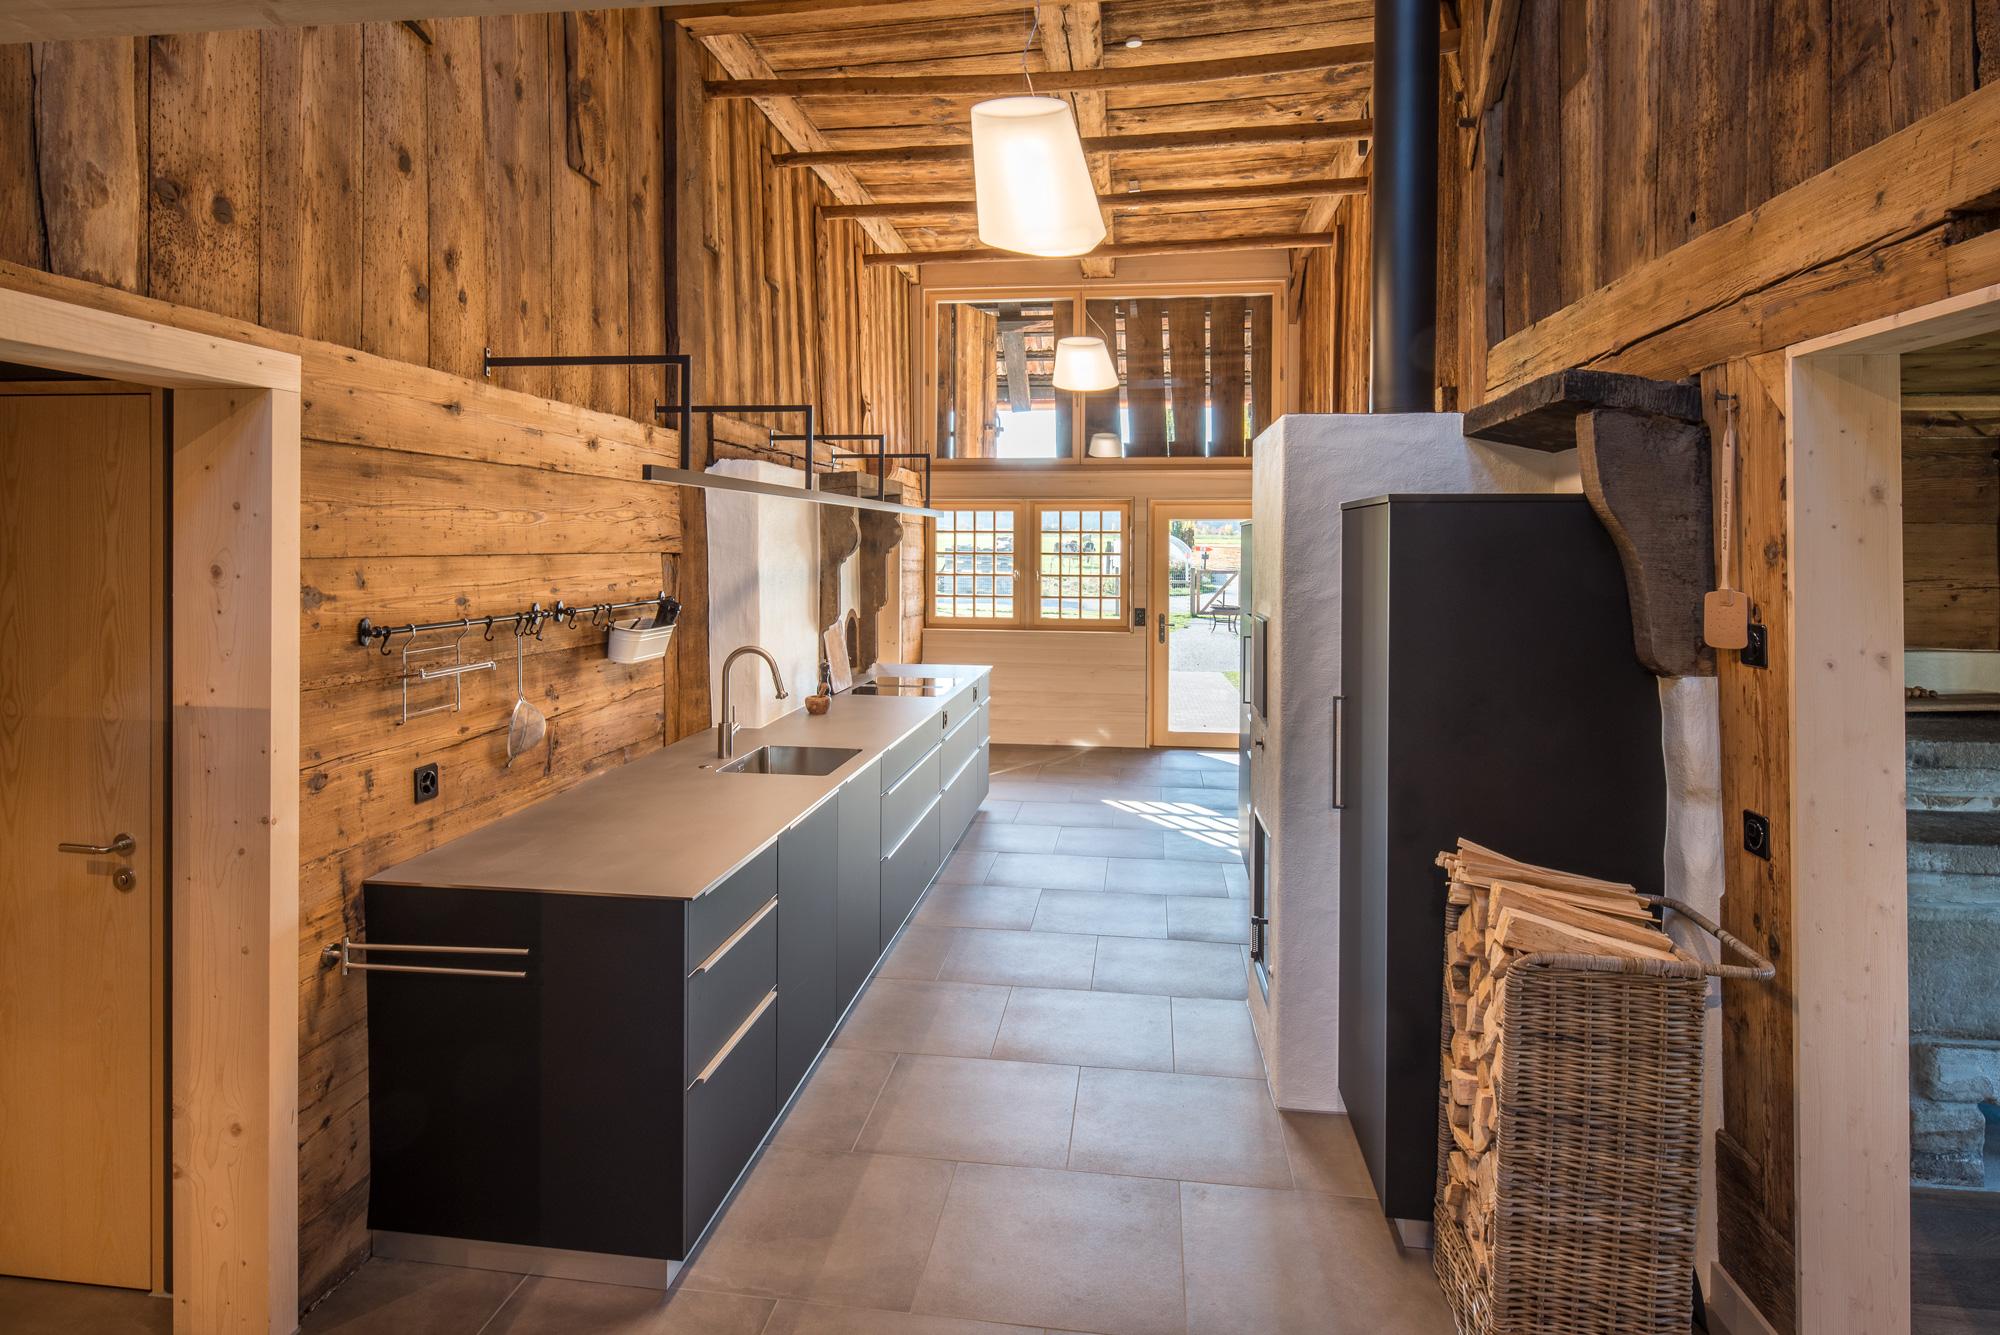 Architektur-Reportage Oppligen: ästhetische, luftige Küche aus Holz